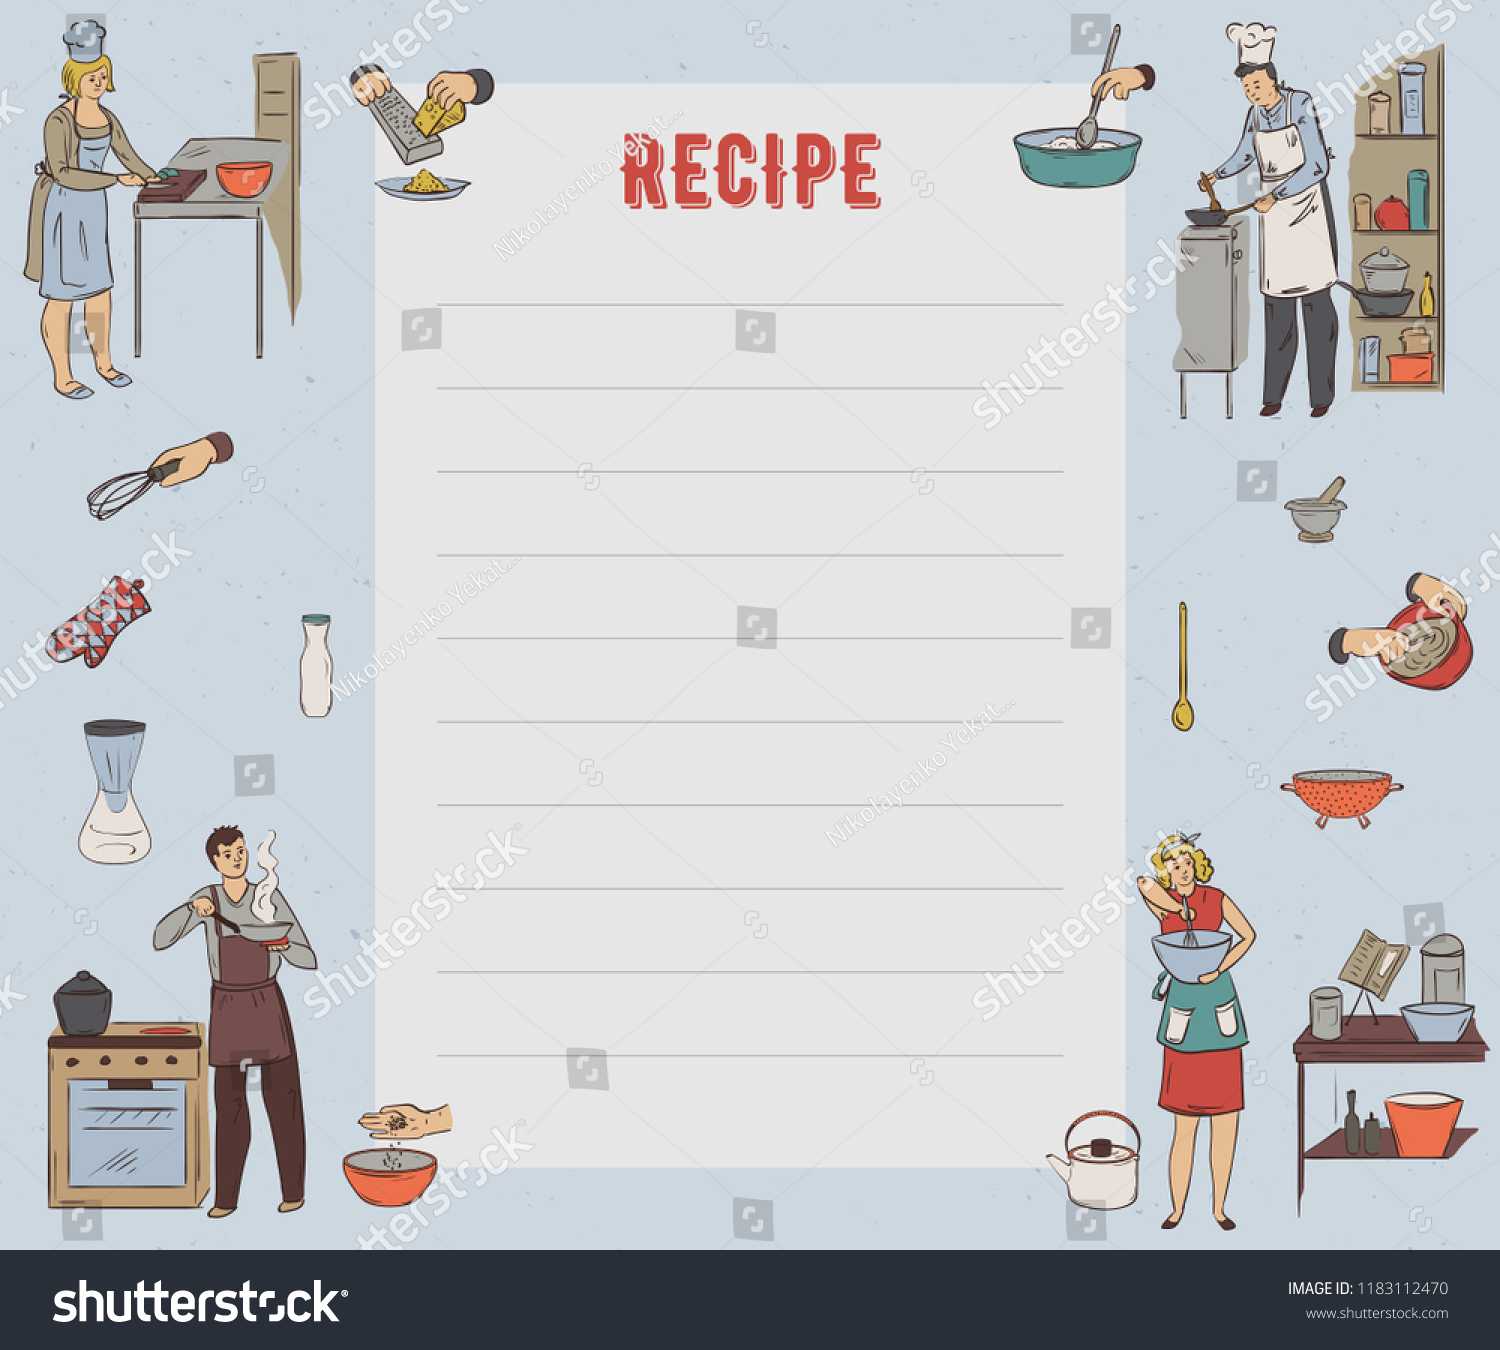 Recipe Card Cookbook Page Design Template Stock Image Within Recipe Card Design Template